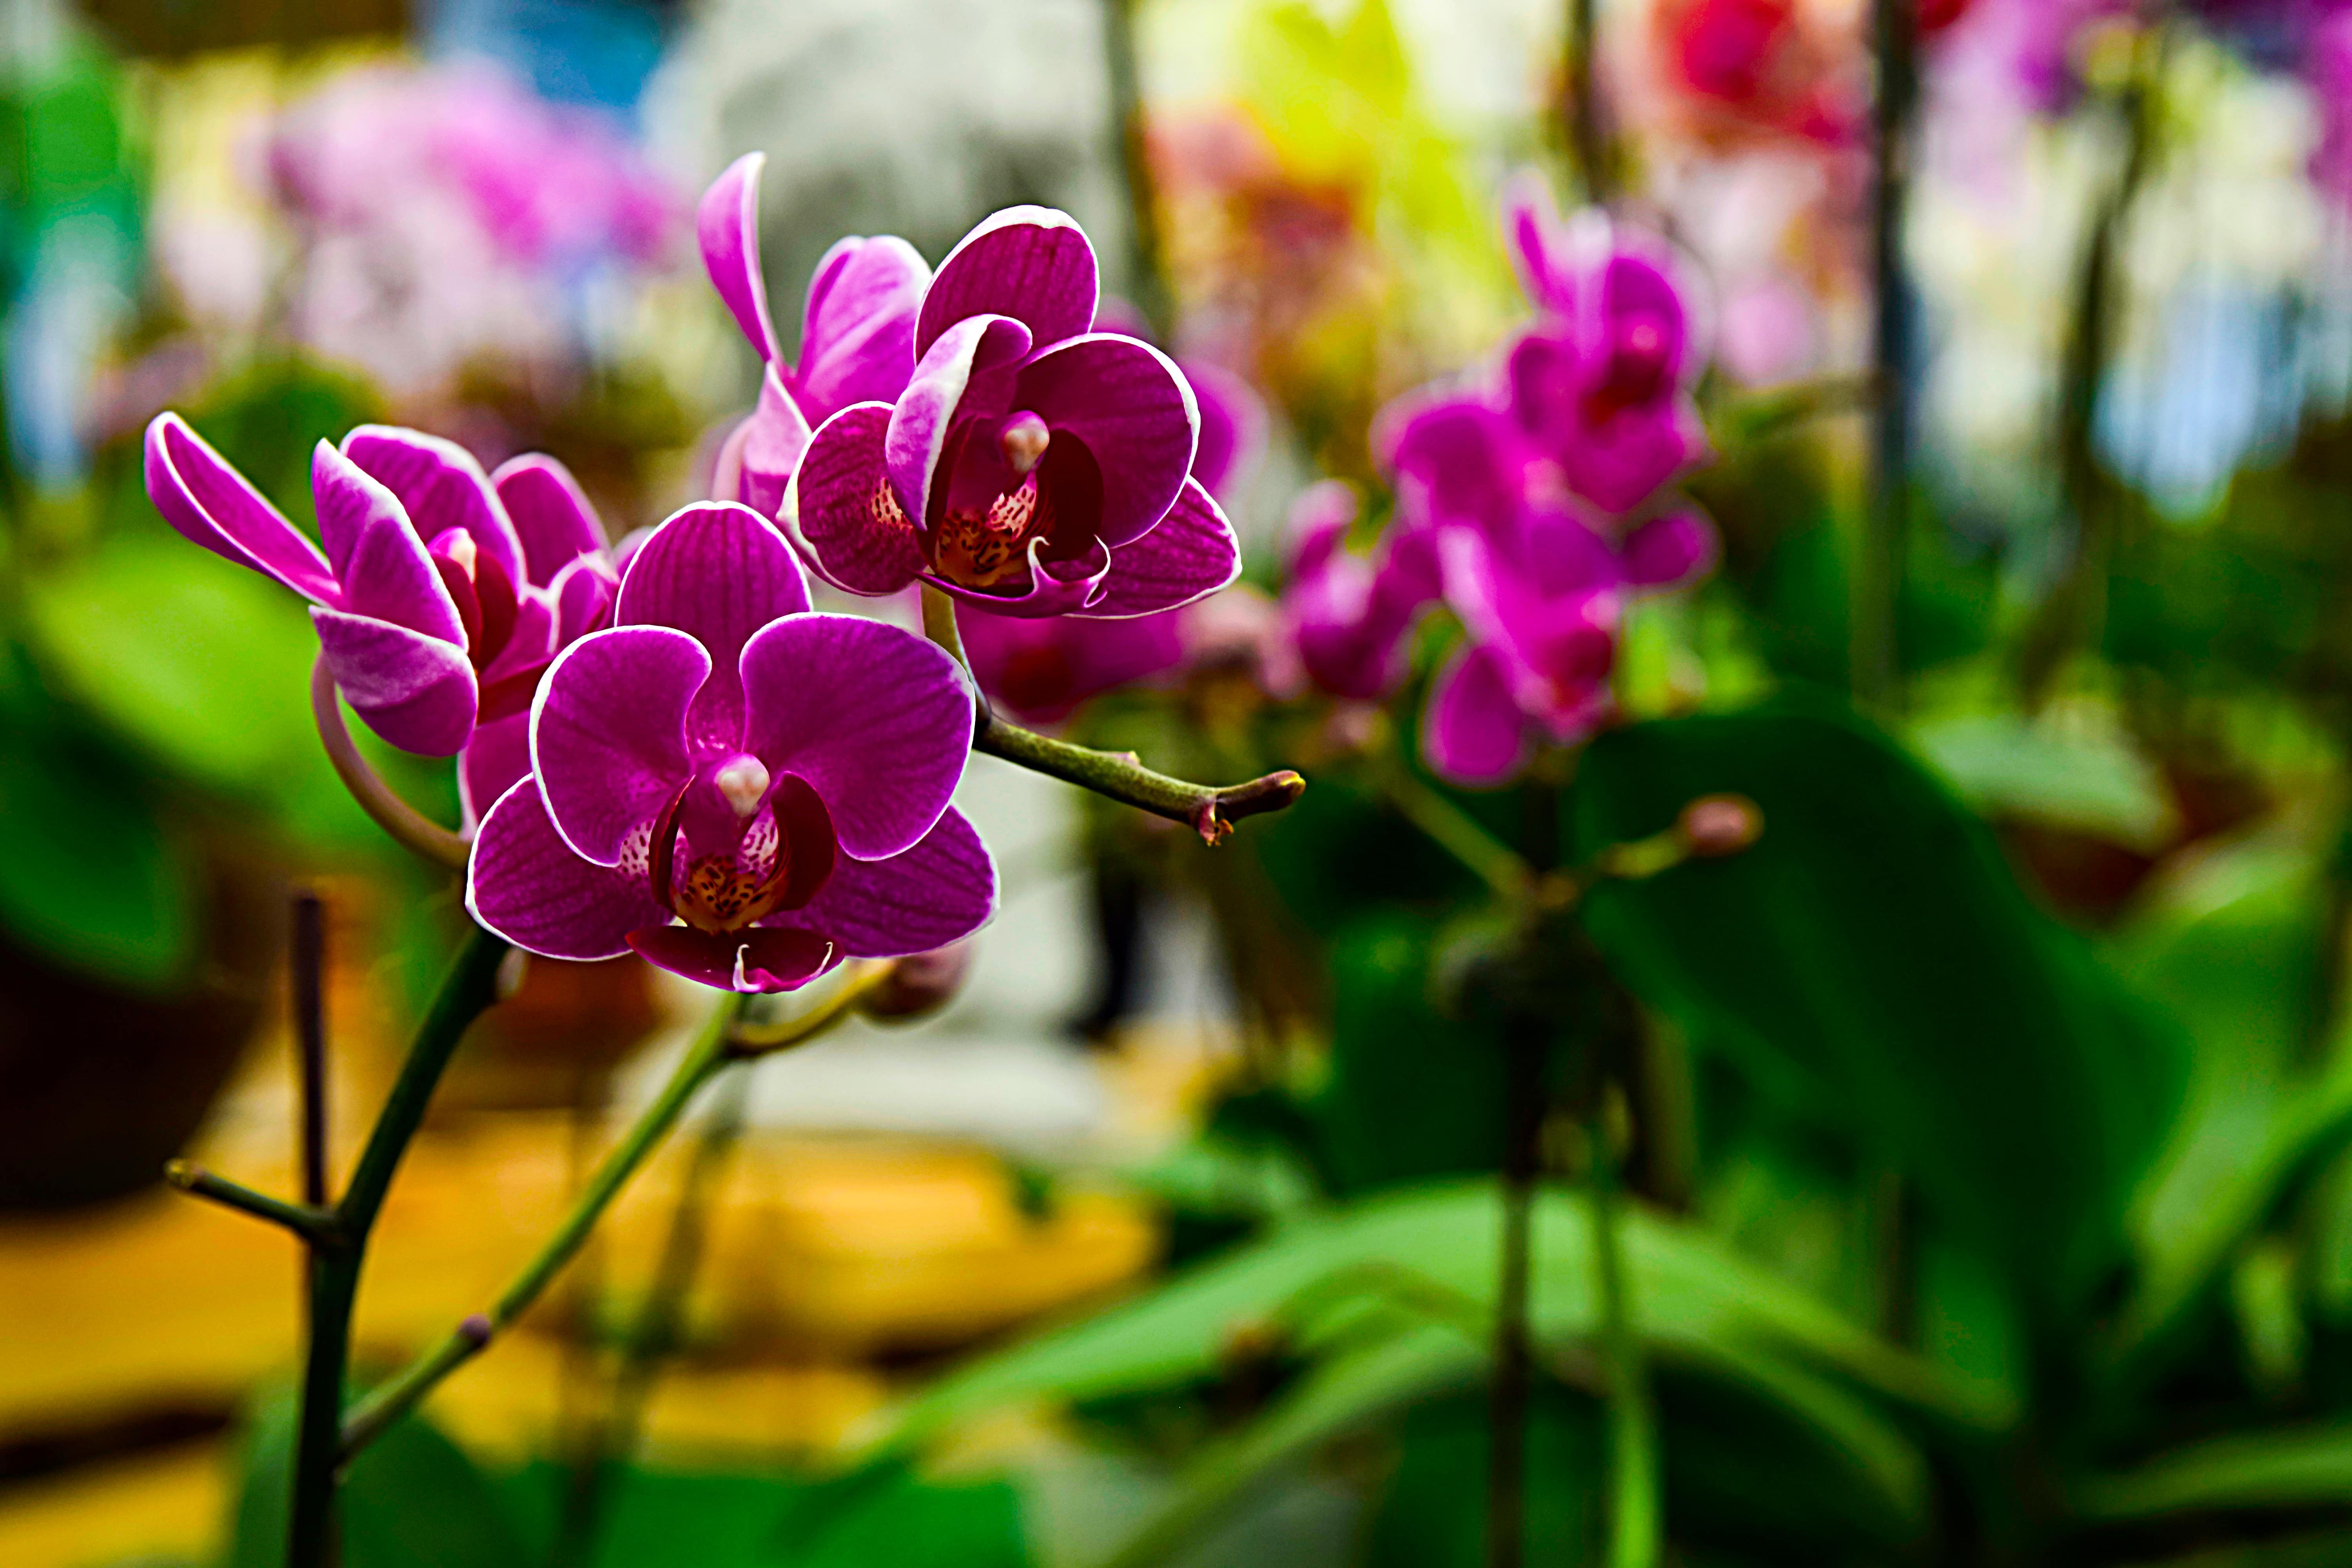 華やかな紫色の胡蝶蘭 その魅力と種類 喜ばれるシーンを解説 Hanasaku